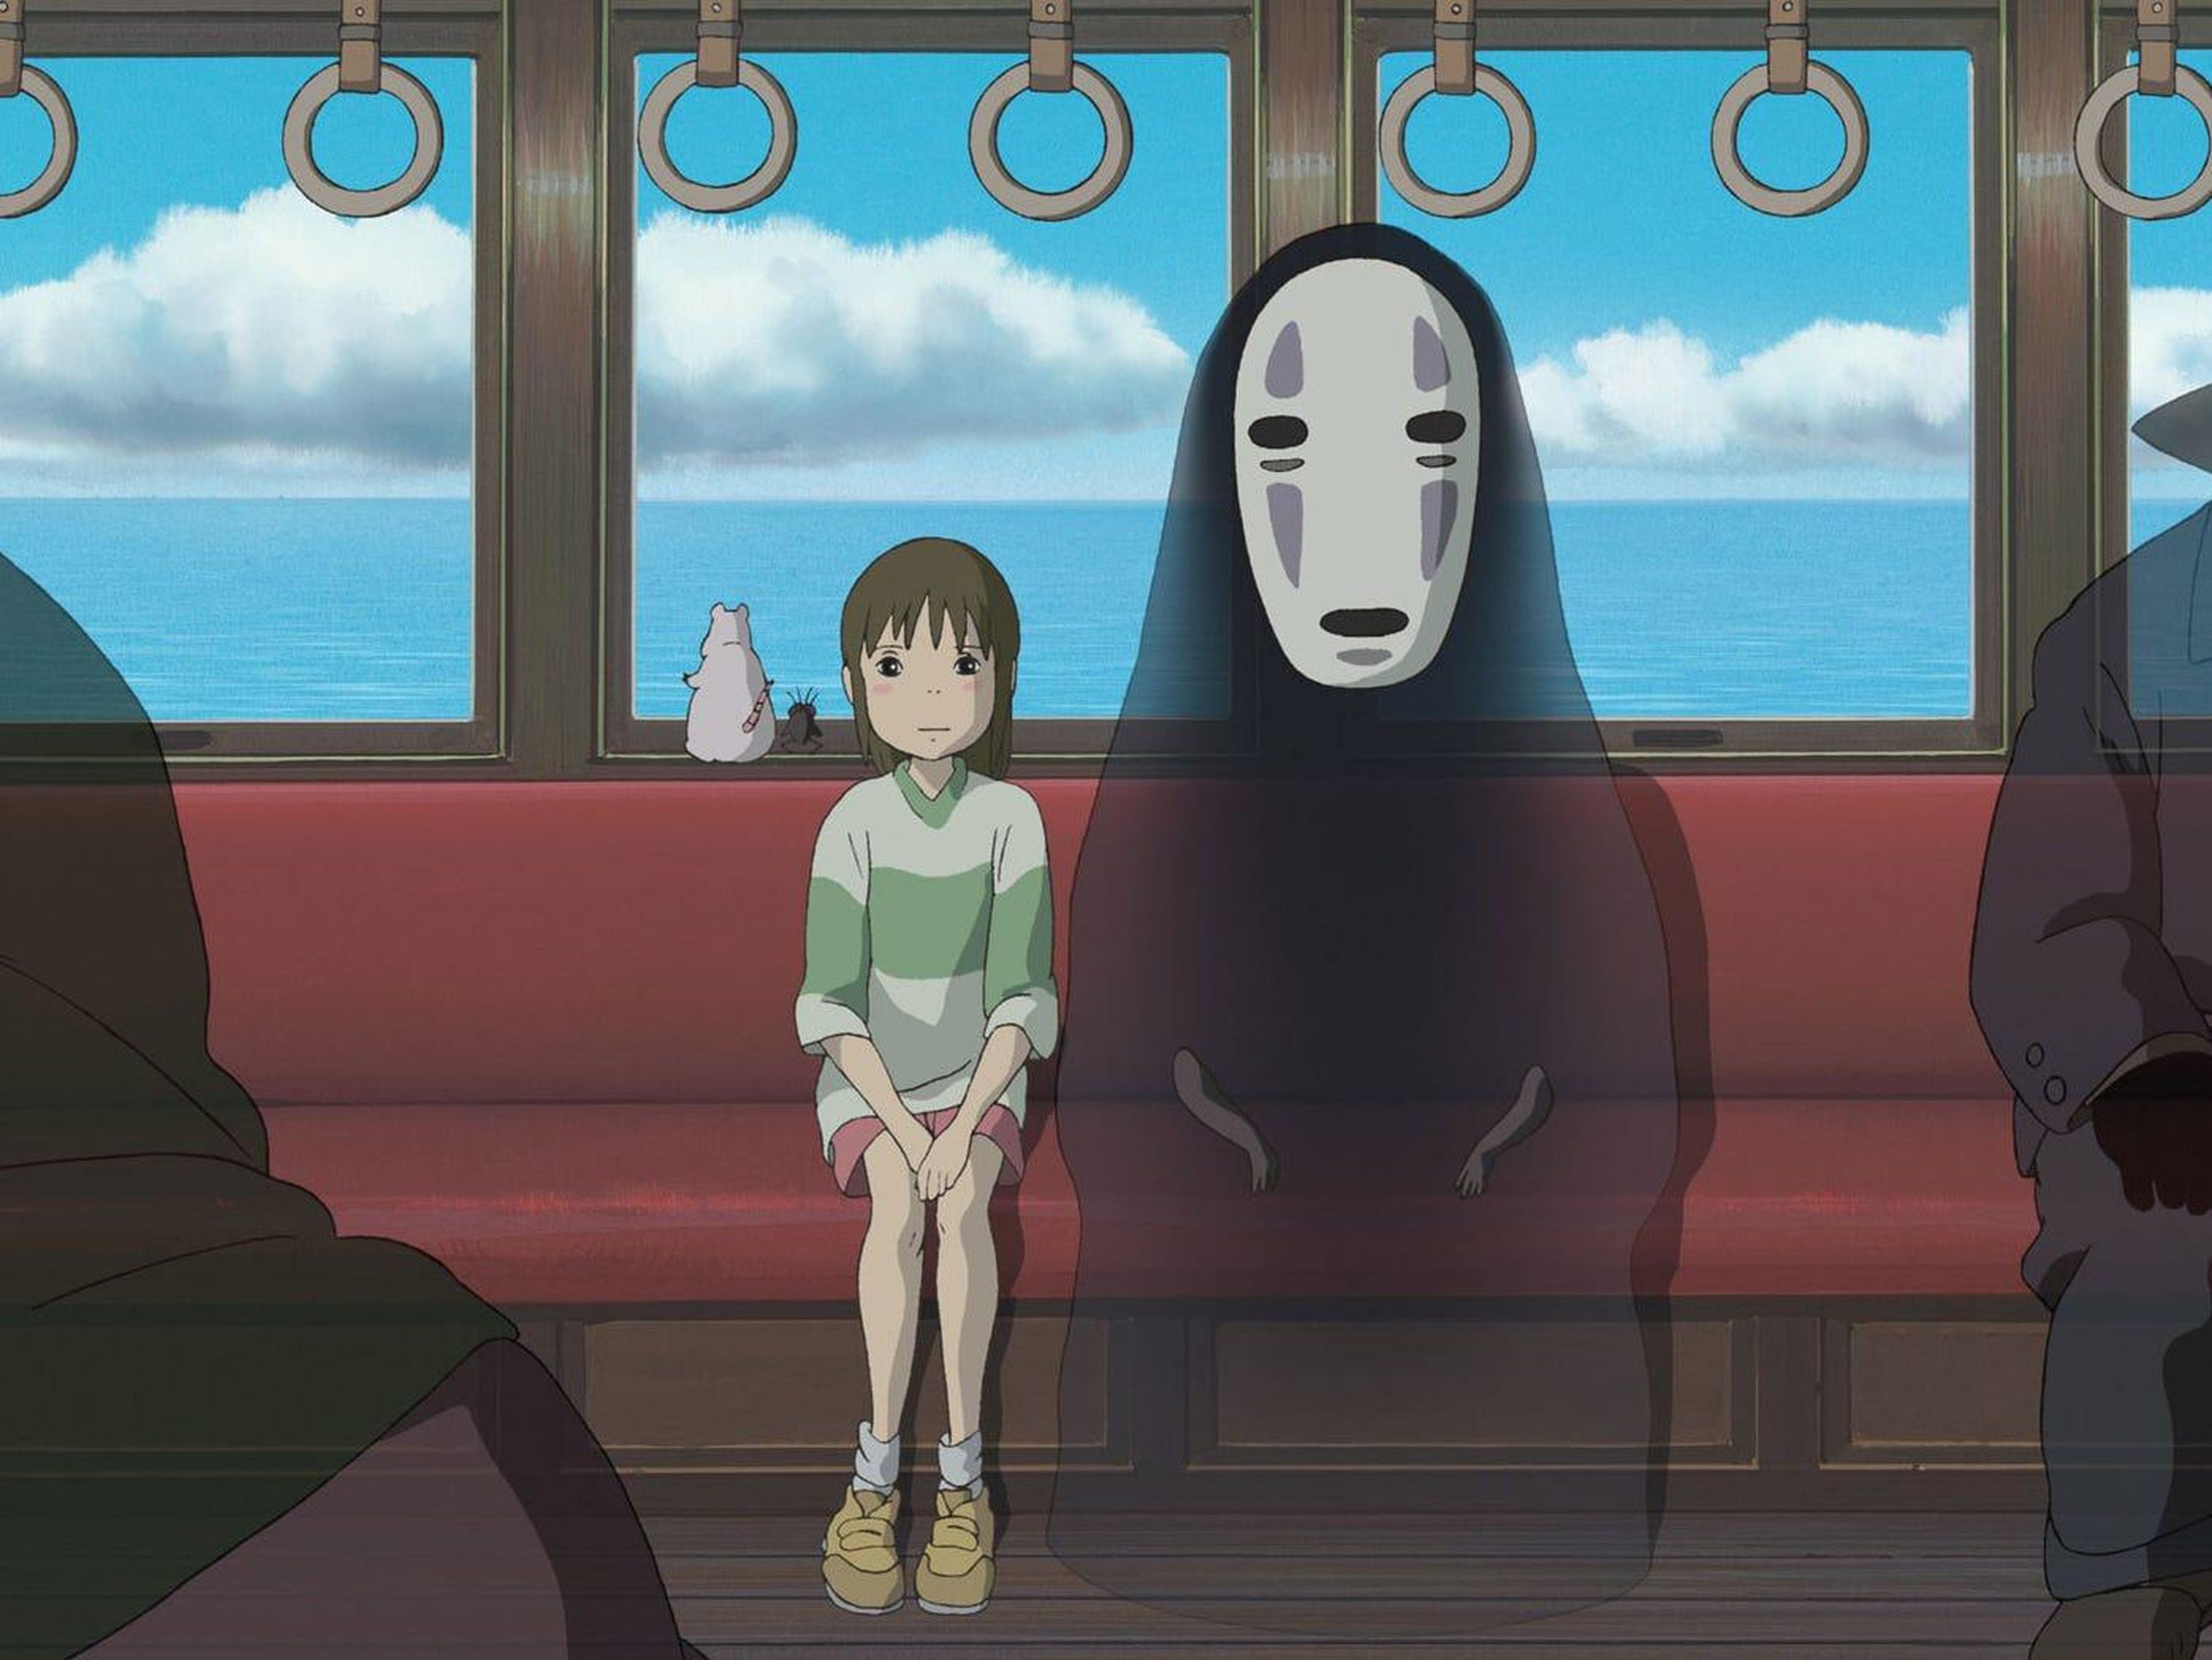 'El viaje de Chihiro' se estrenó originalmente en Japón.